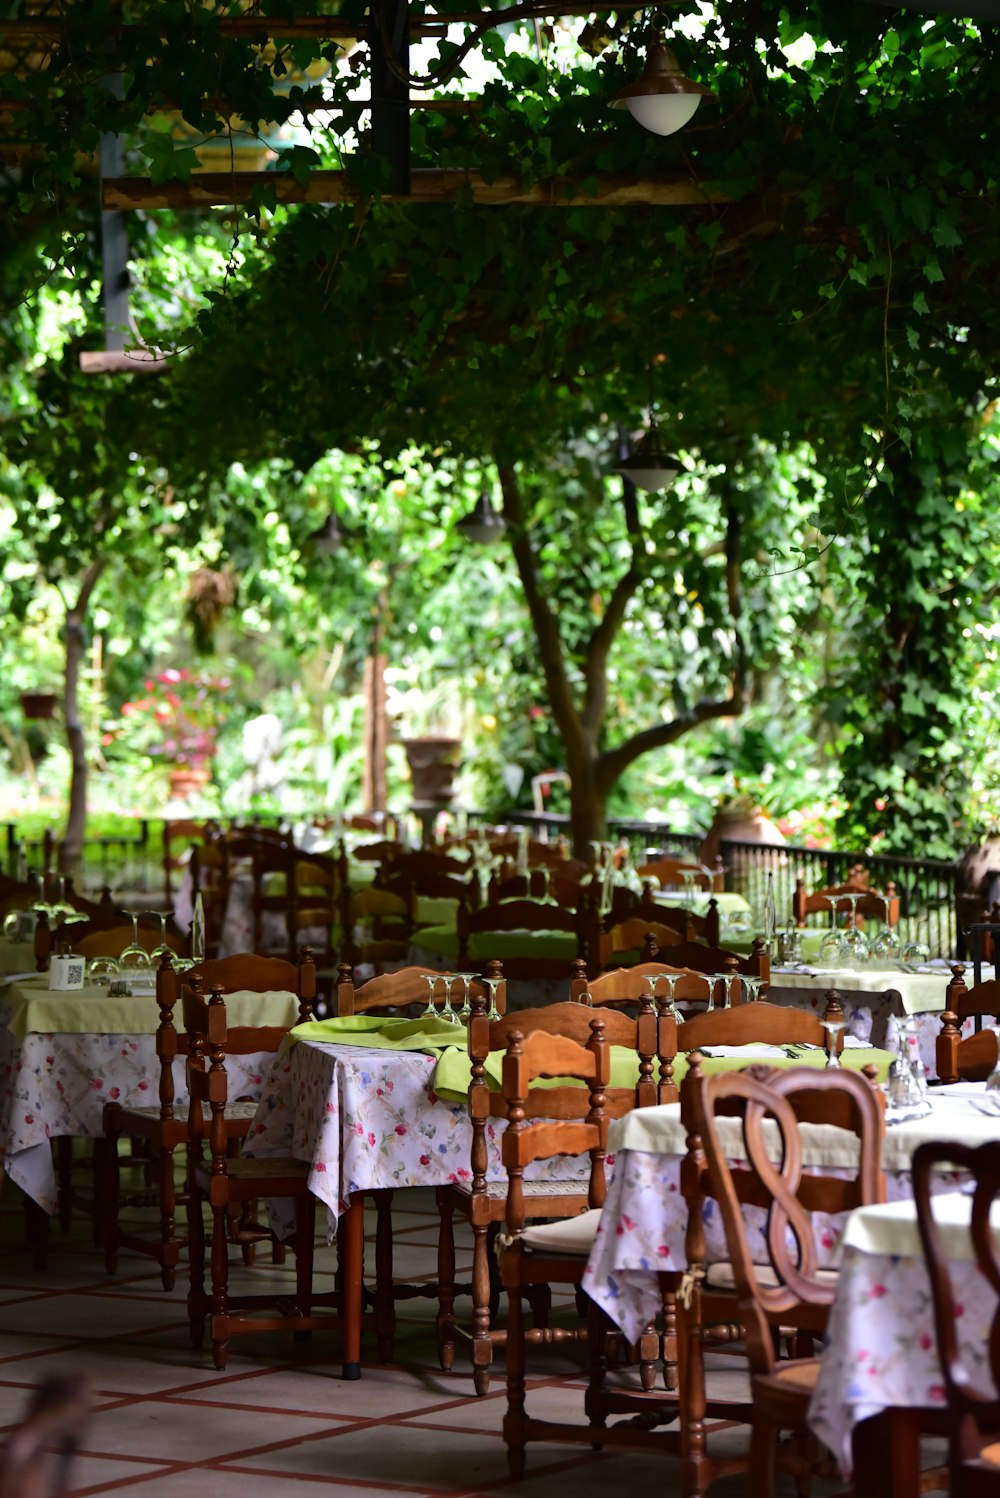 Sillas y mesas de madera marrón cerca de árboles verdes durante el día